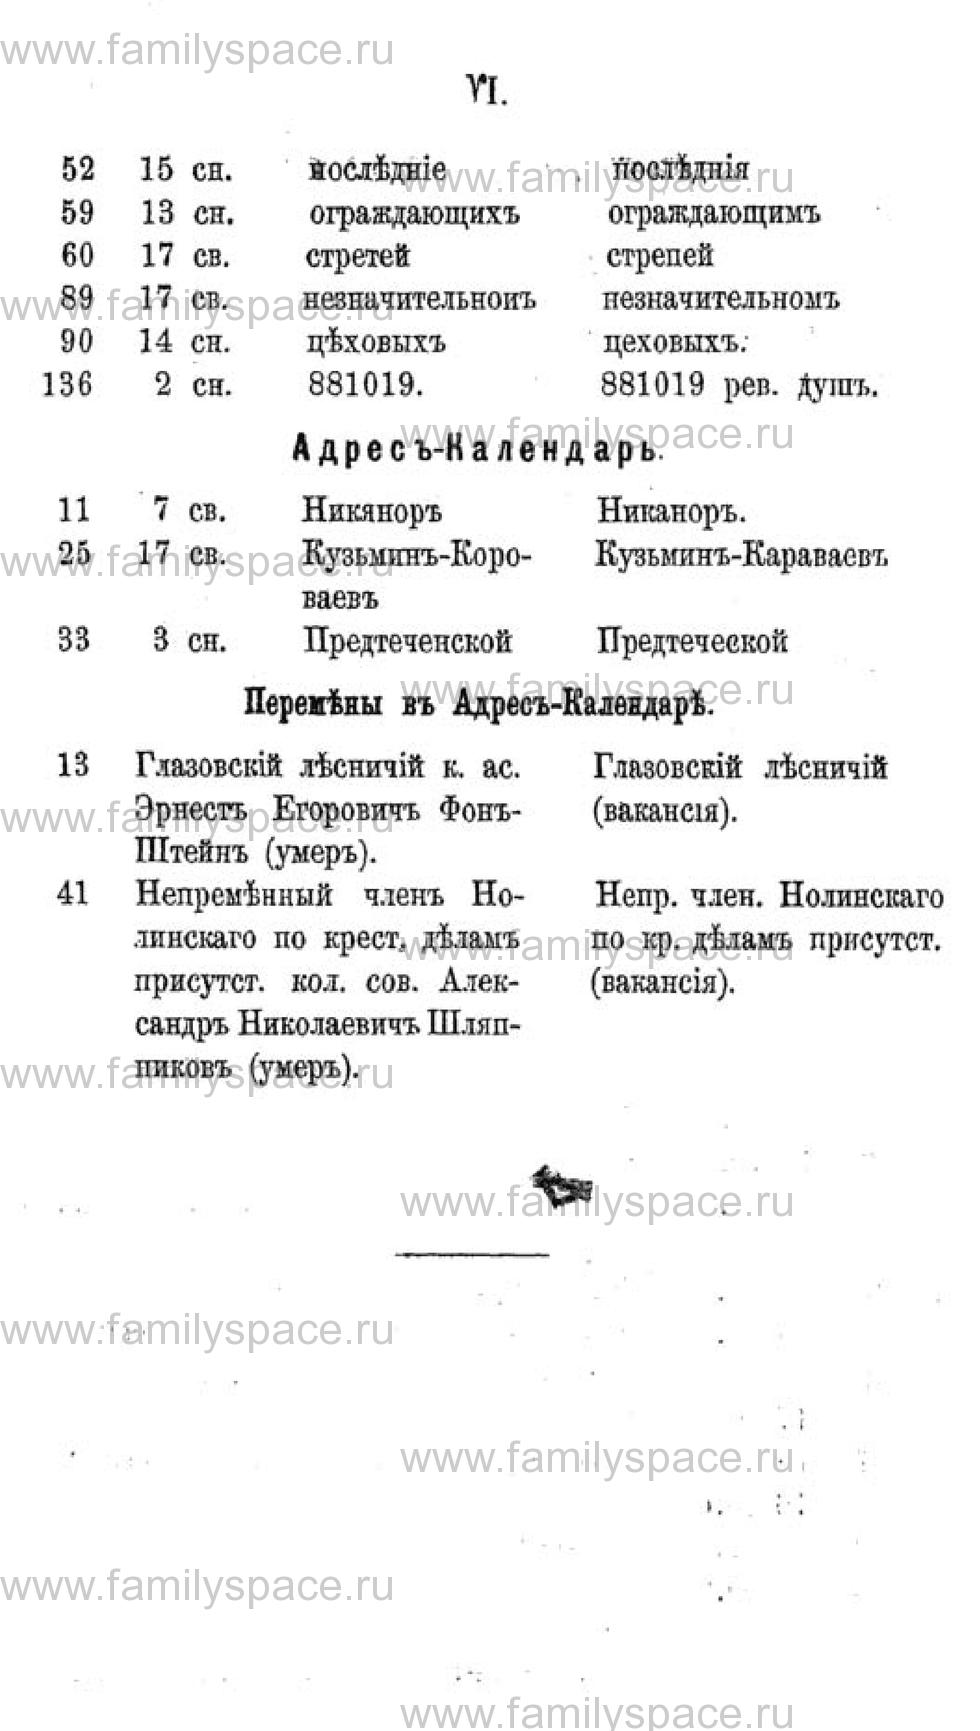 Поиск по фамилии - Календарь Вятской губернии - 1880, страница 9